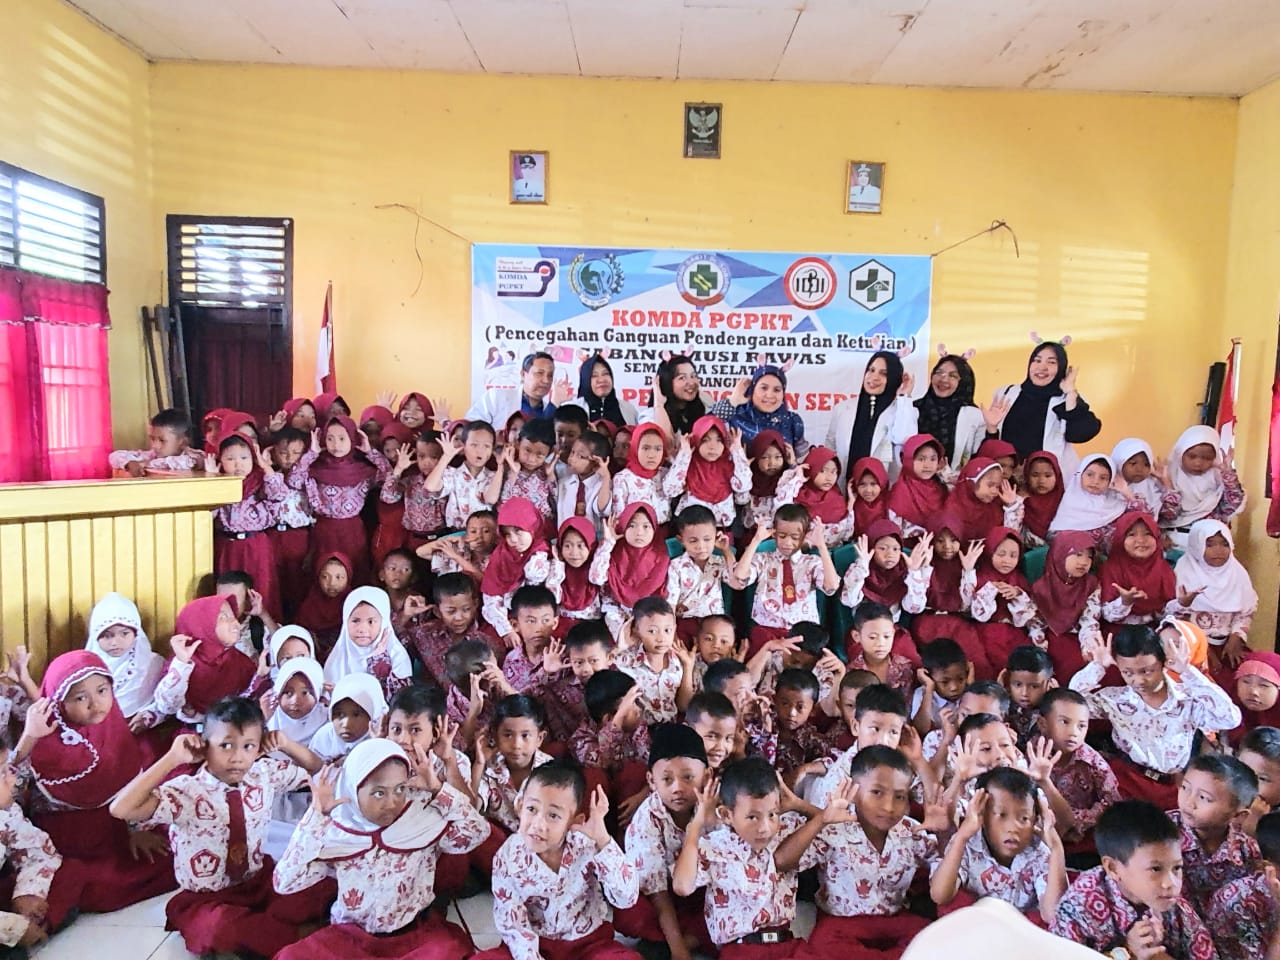 Rumah Sakit Dr. Sobirin Bekerja sama dengan KOMDA PGPKT (Pencegahan Gangguan Pendengaran dan Ketulian) Musi Rawas Sumatera Selatan dalam Rangka Memperingati Hari Pendengaran Sedunia